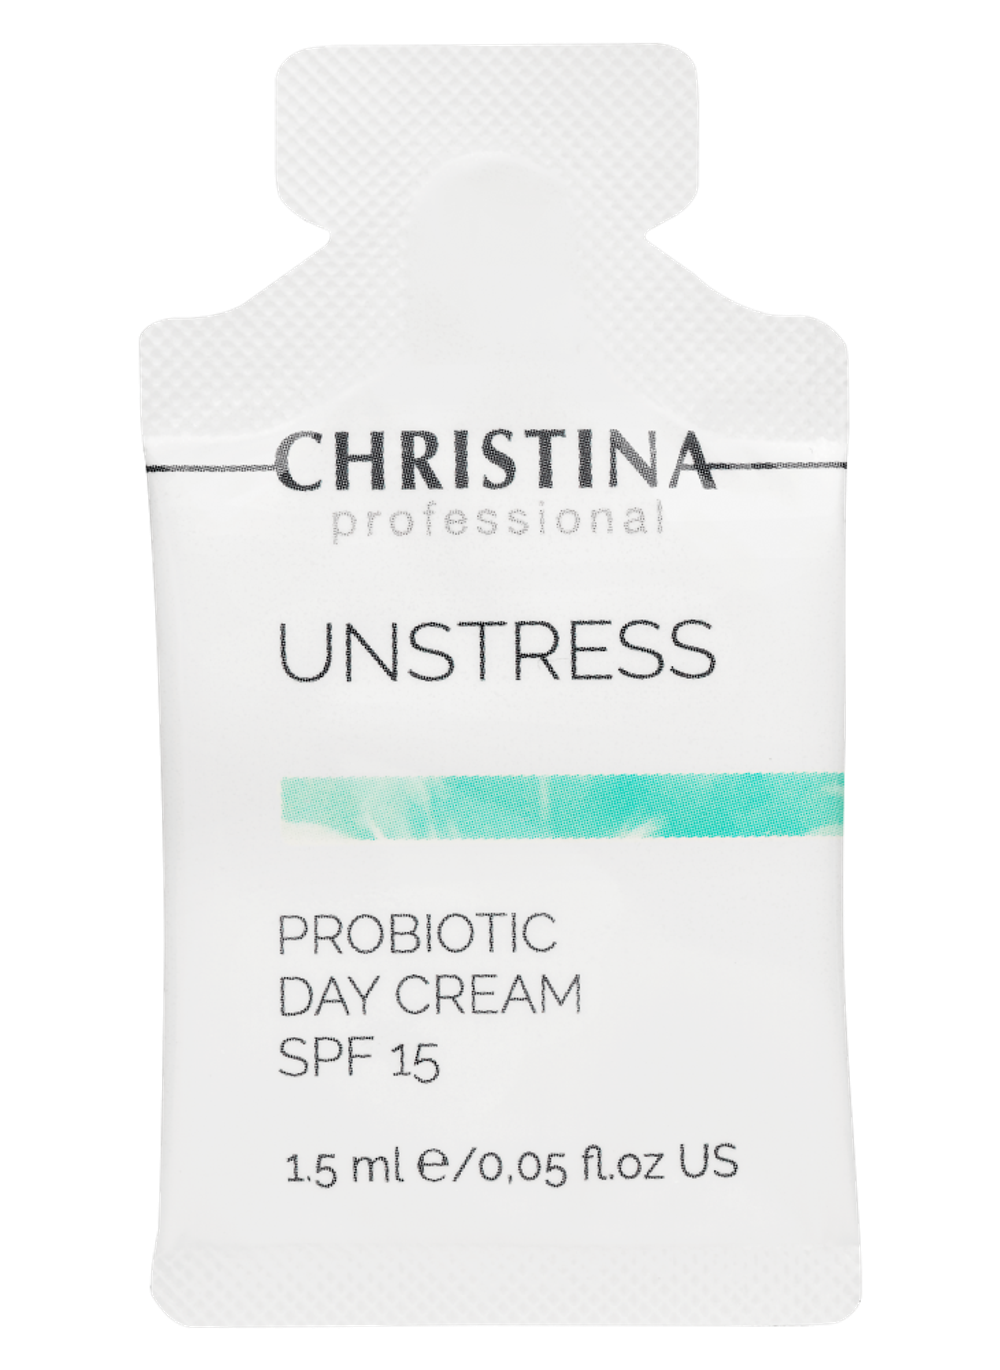 CHRISTINA Unstress-Probiotic day cream SPF-15 sachets kit 30 pcs